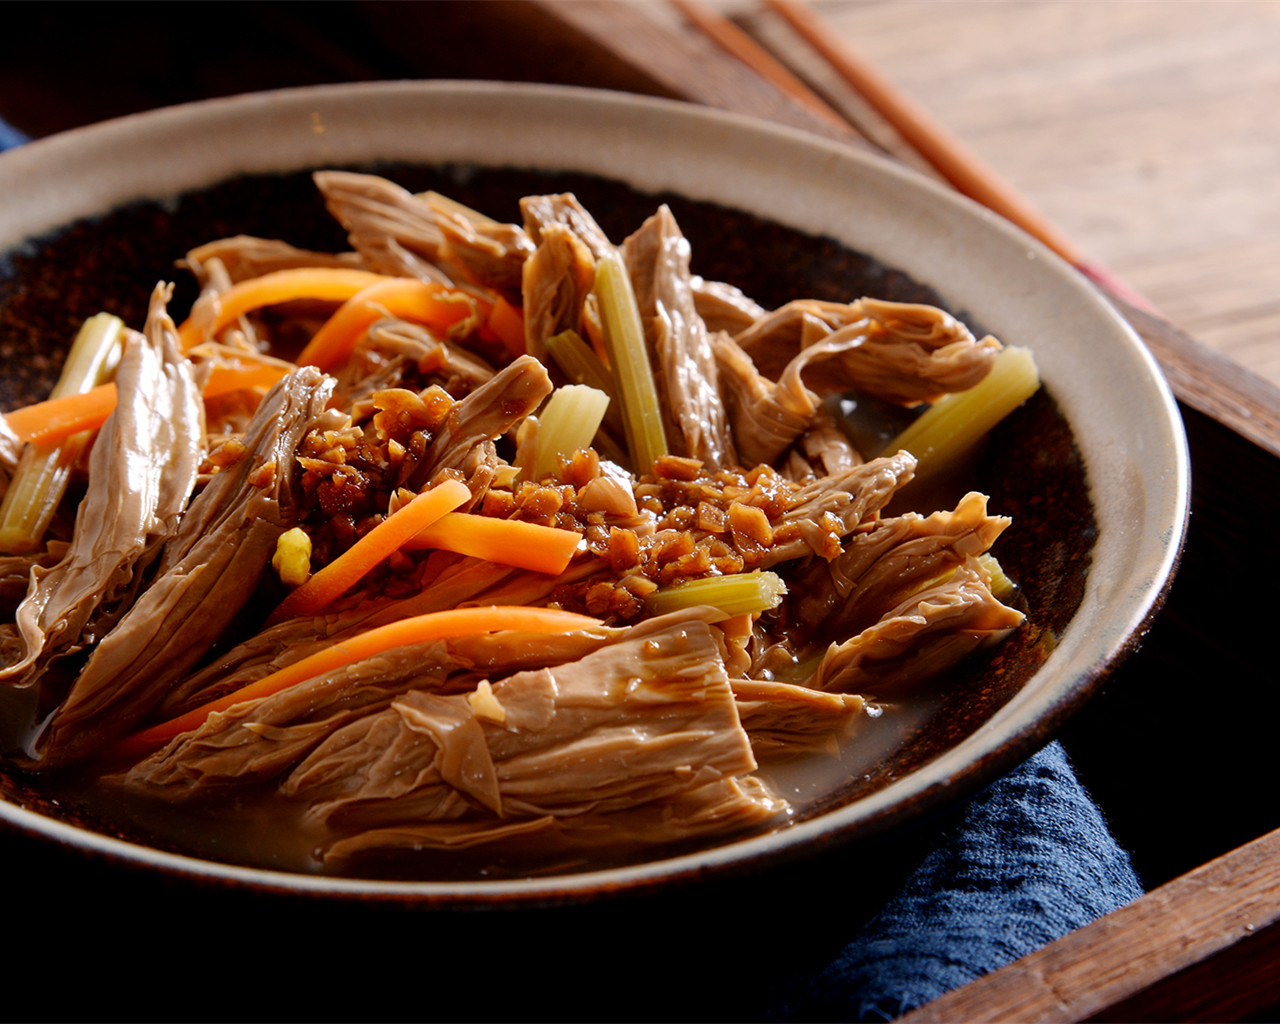 【每周食谱】凉拌的黑豆腐竹的做法